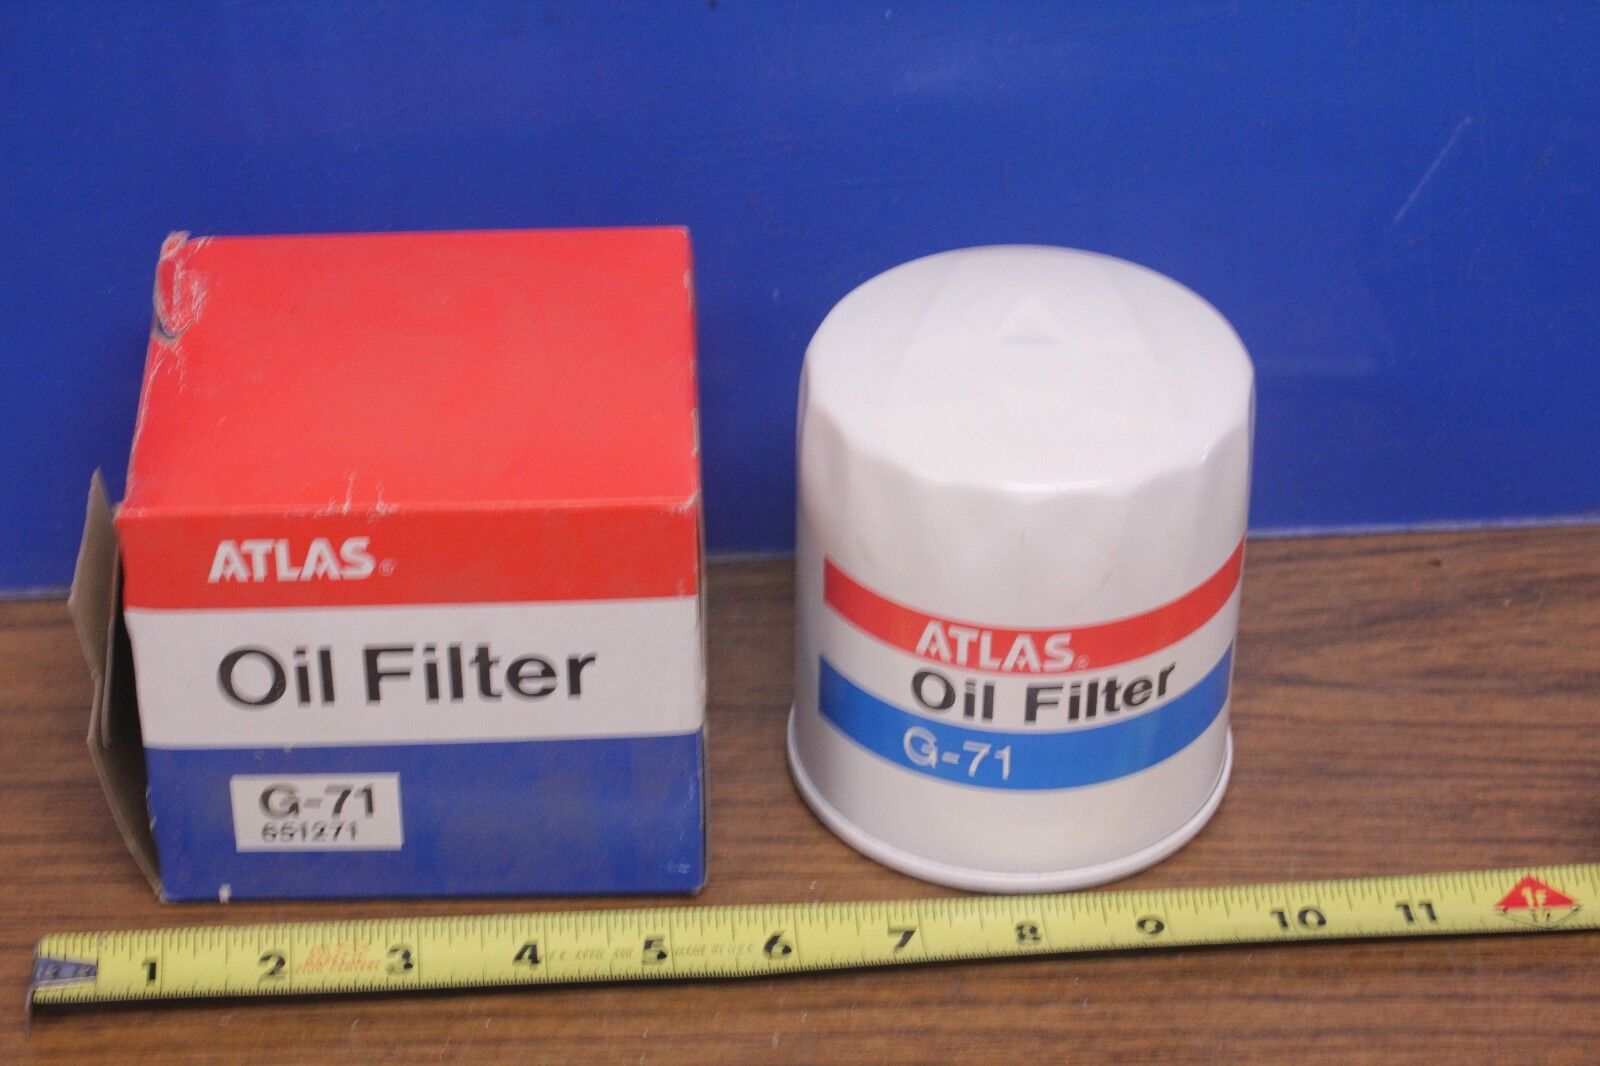 Engine Oil Filter Atlas G-71 651271